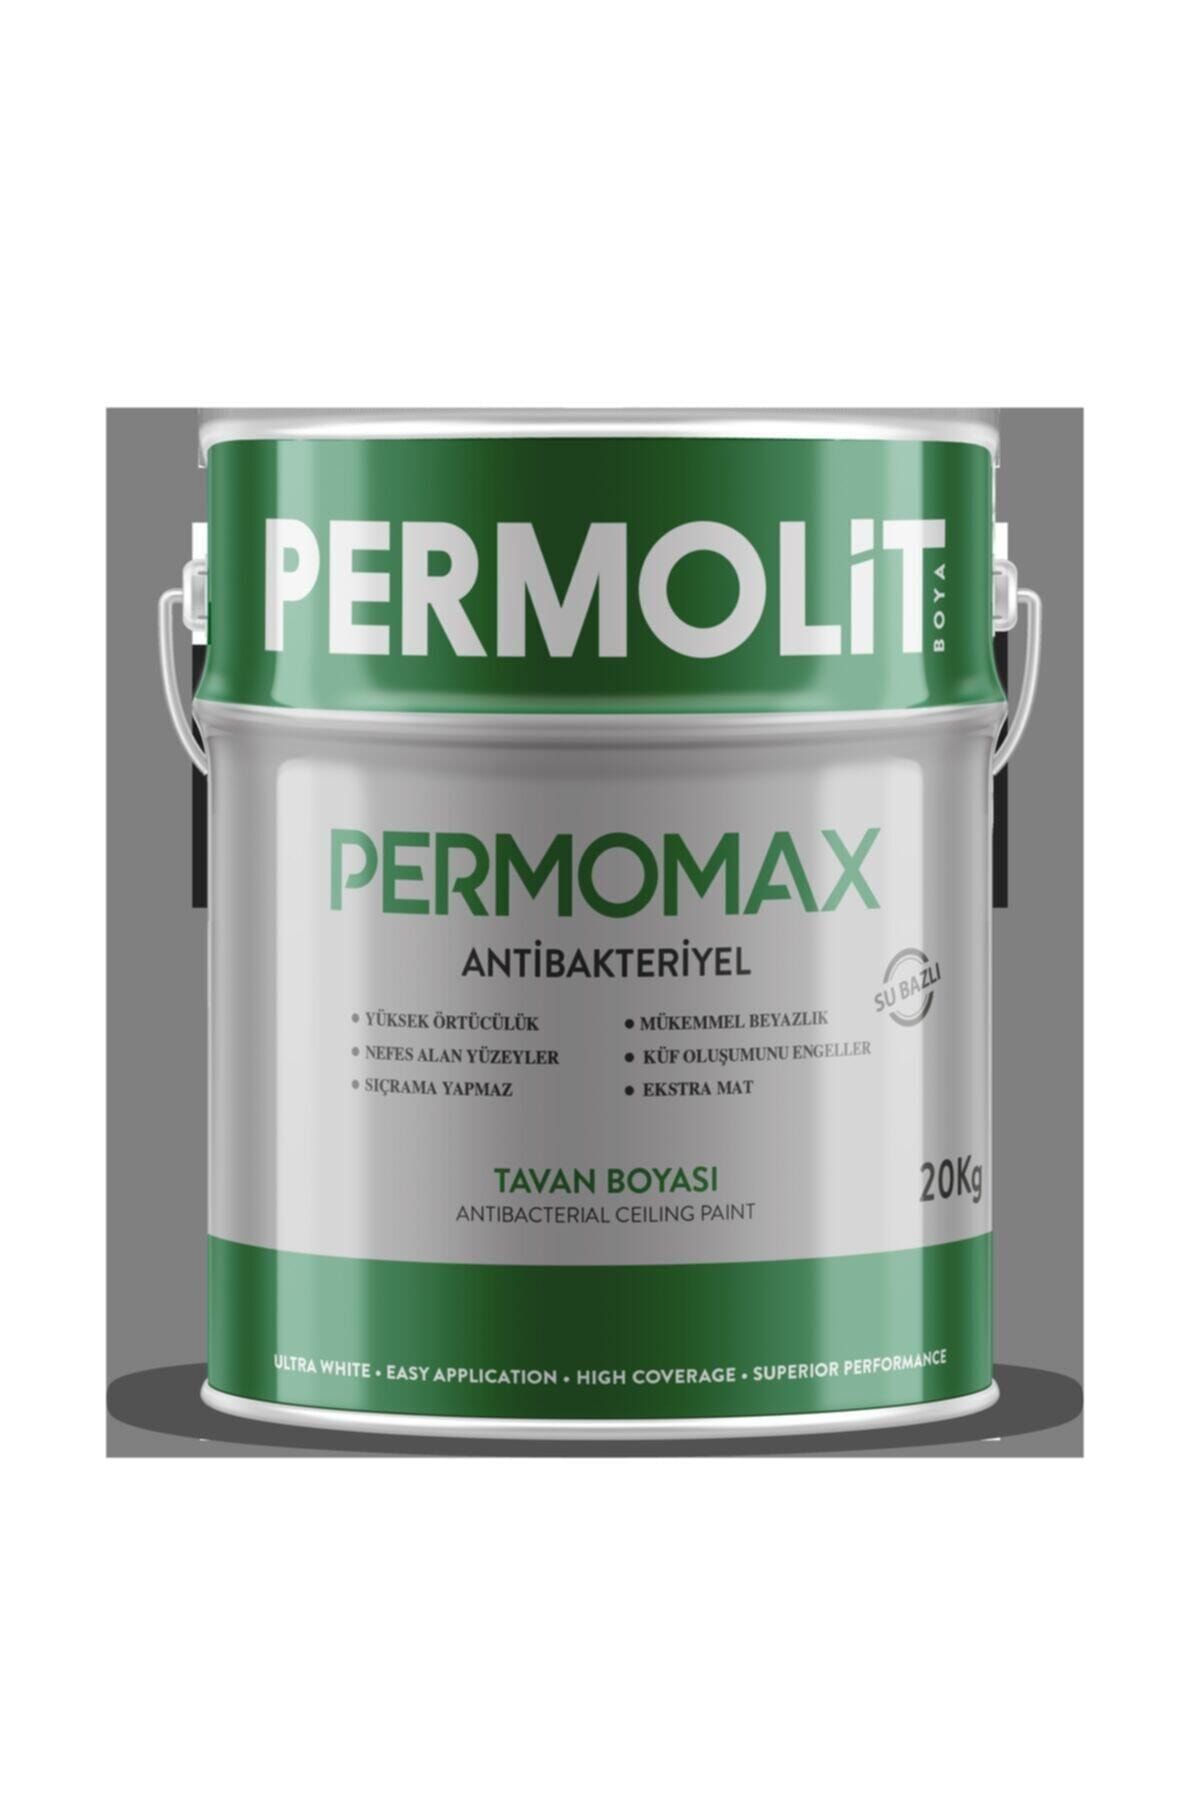 Permolit Permomax Antibakteriyel Antiküf Tavan Boyası 20 kg